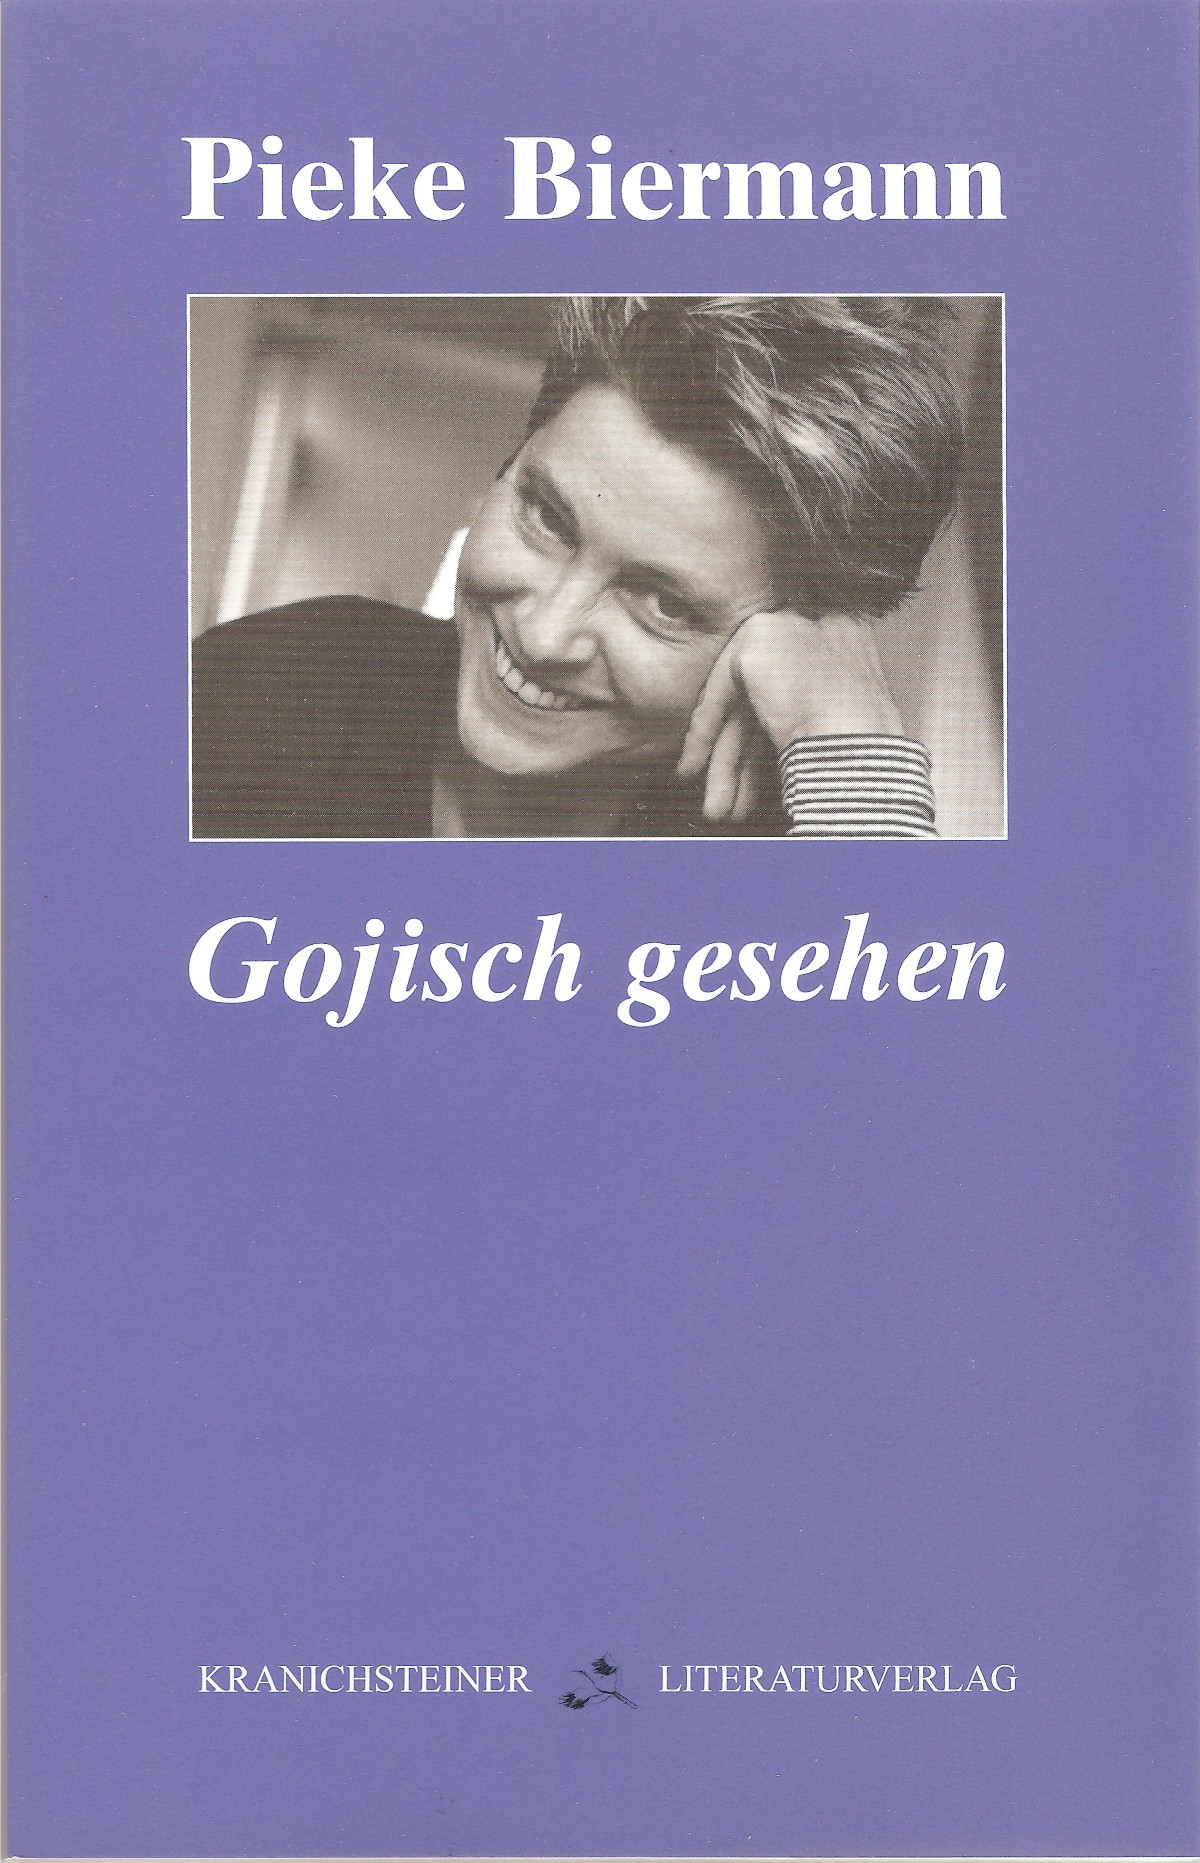 #Pieke Biermann; #Kranichsteiner Literaturverlag